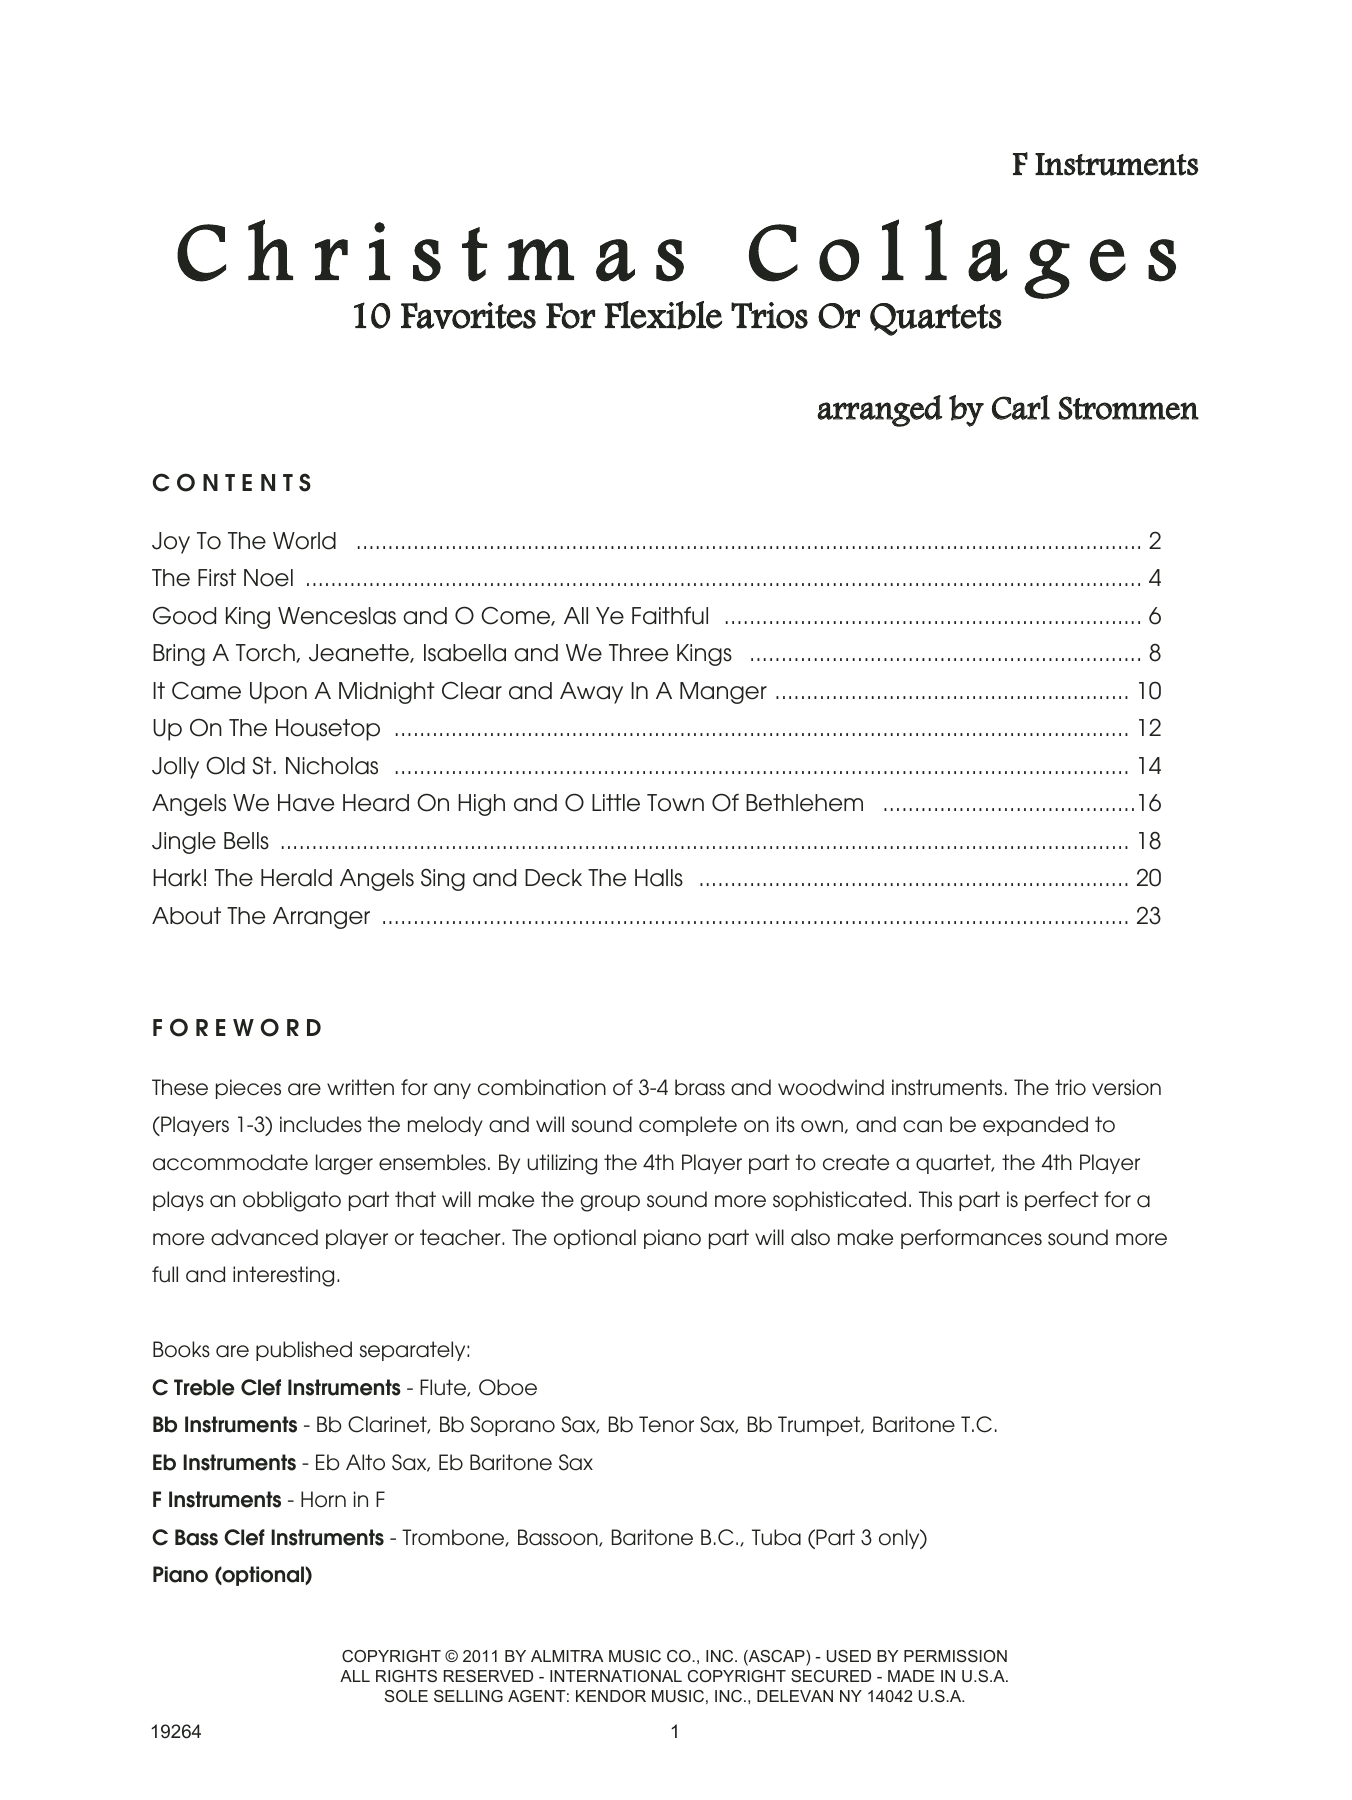 Christmas Collages - F Instruments (Brass Ensemble) von Strommen